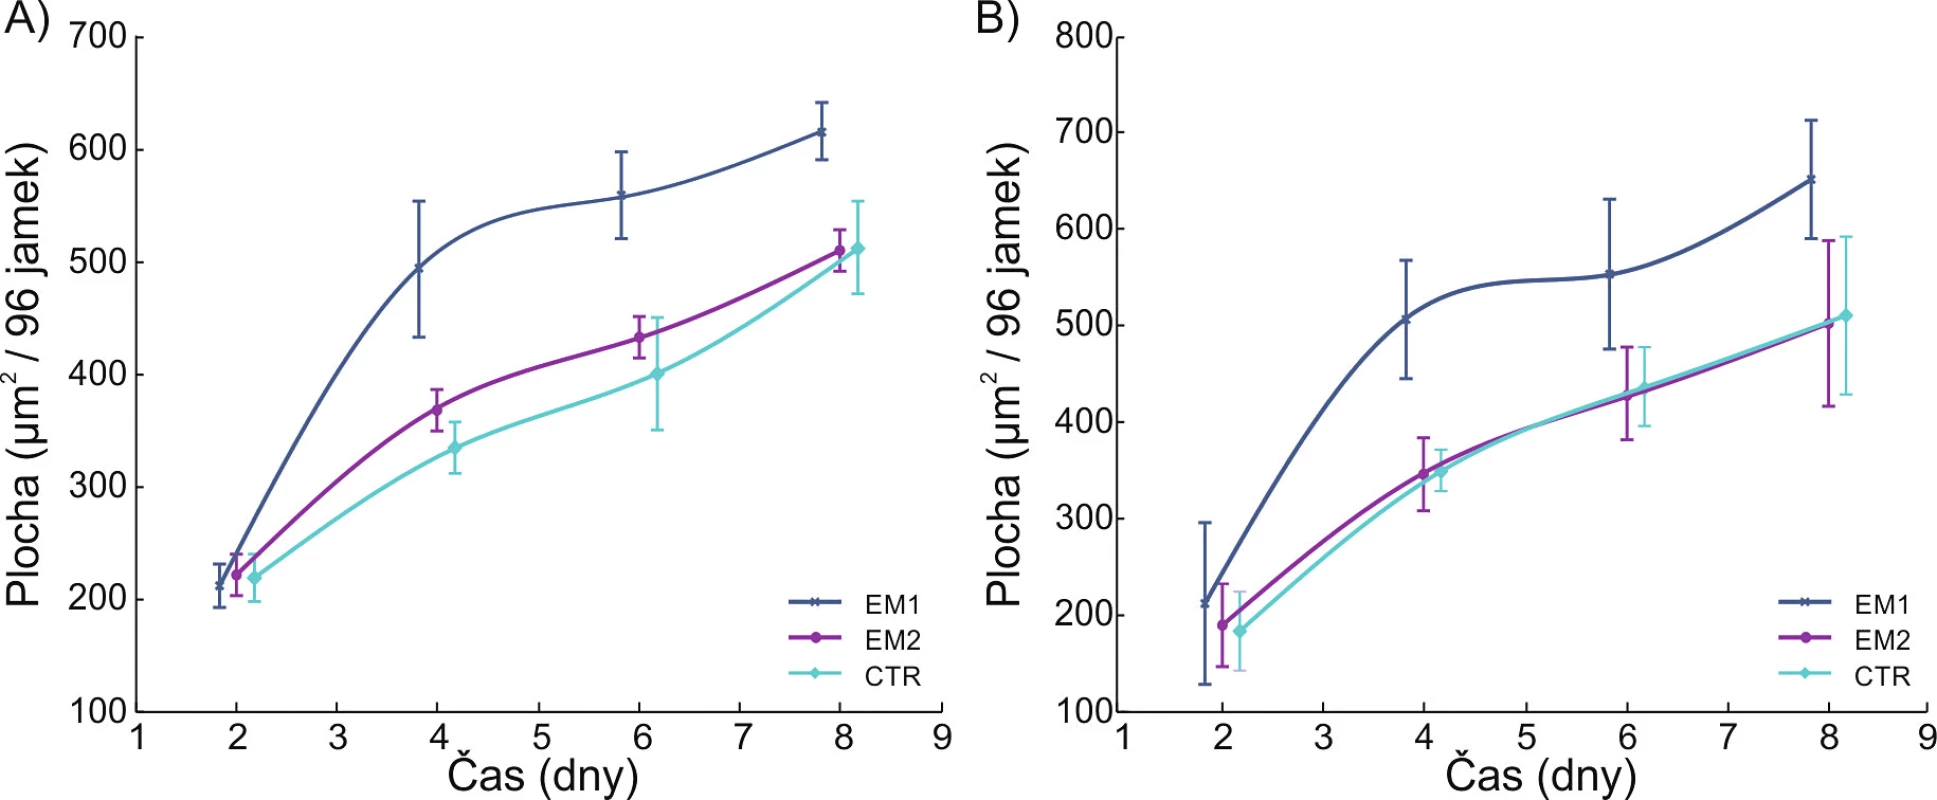 Zvětšení počtu endoteliálních buněk, tedy stimulace jejich množení, pod vlivem impulzních indukovaných elektrických proudů demonstrují křivky EM1. Obdobný výsledek byl získán u lidských (A) i myších (B) endoteliálních buněk. Křivky označené jako CTR odpovídají kontrole a EM2 neúčinnému působení indukovaných elektrických proudů s amplitudově modulovaným harmonickým (sinusovým) průběhem. Převzato z práce (12).